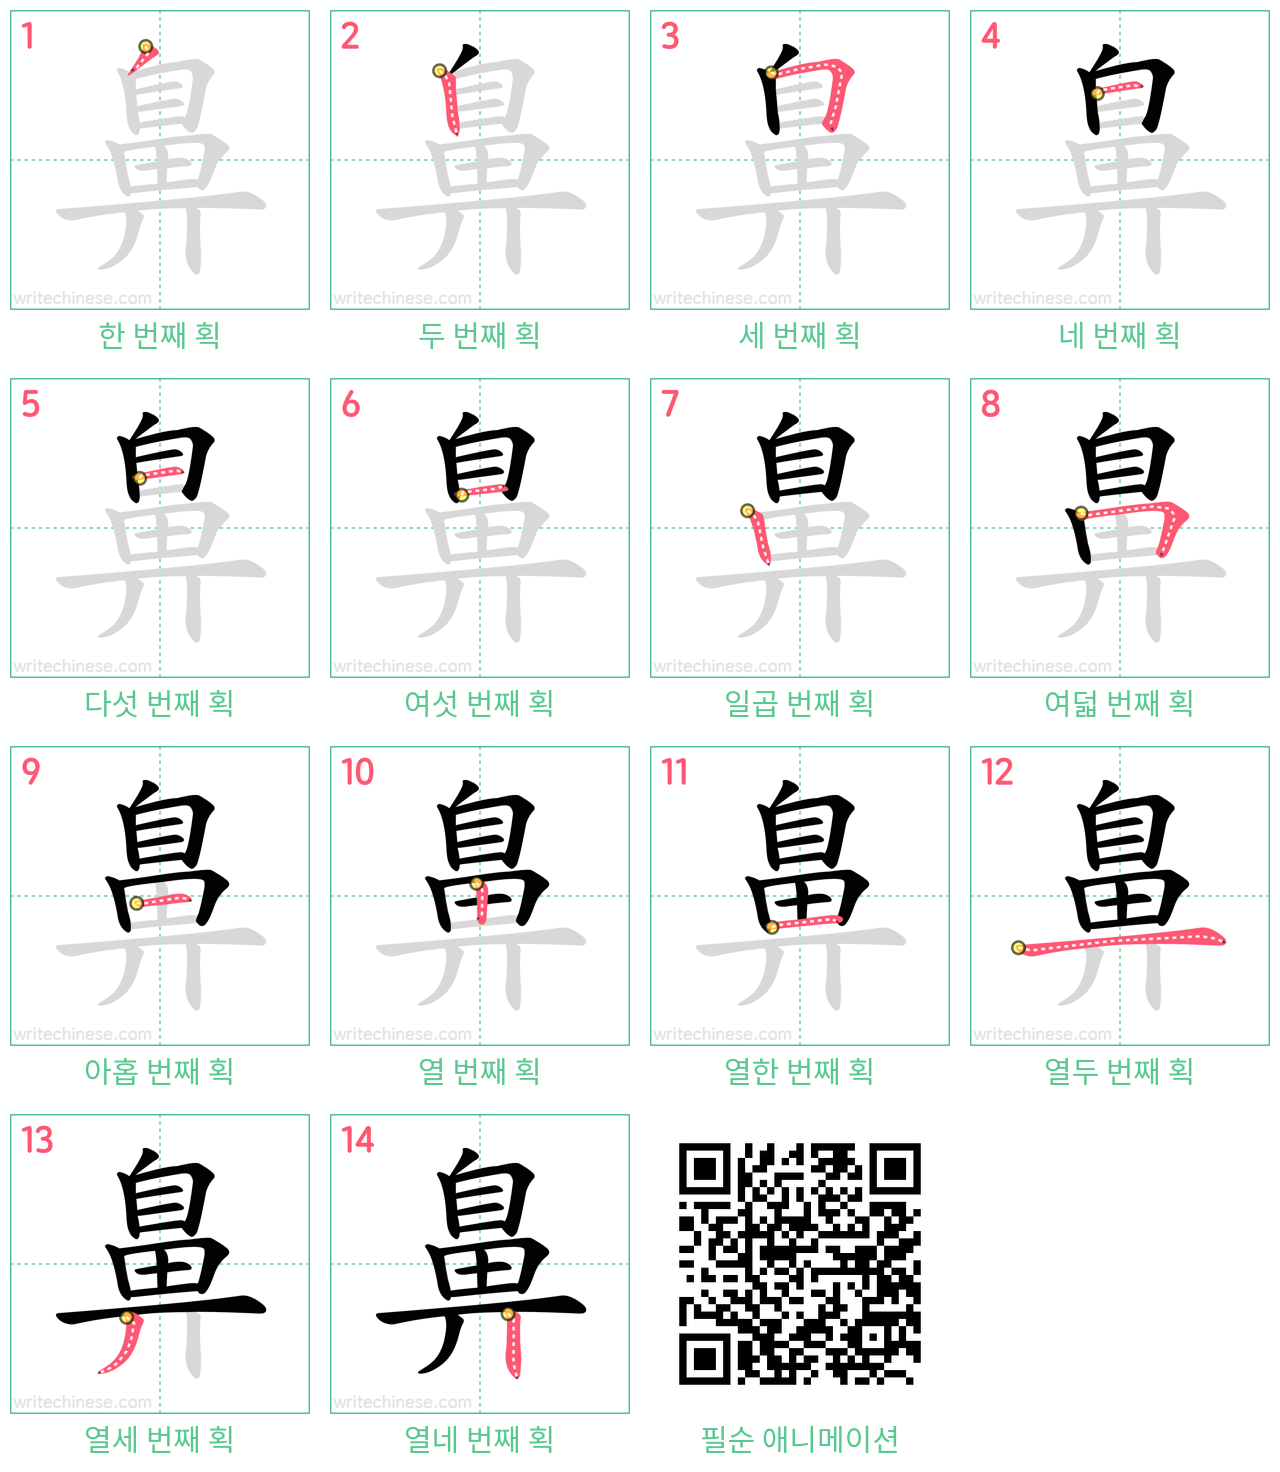 鼻 step-by-step stroke order diagrams